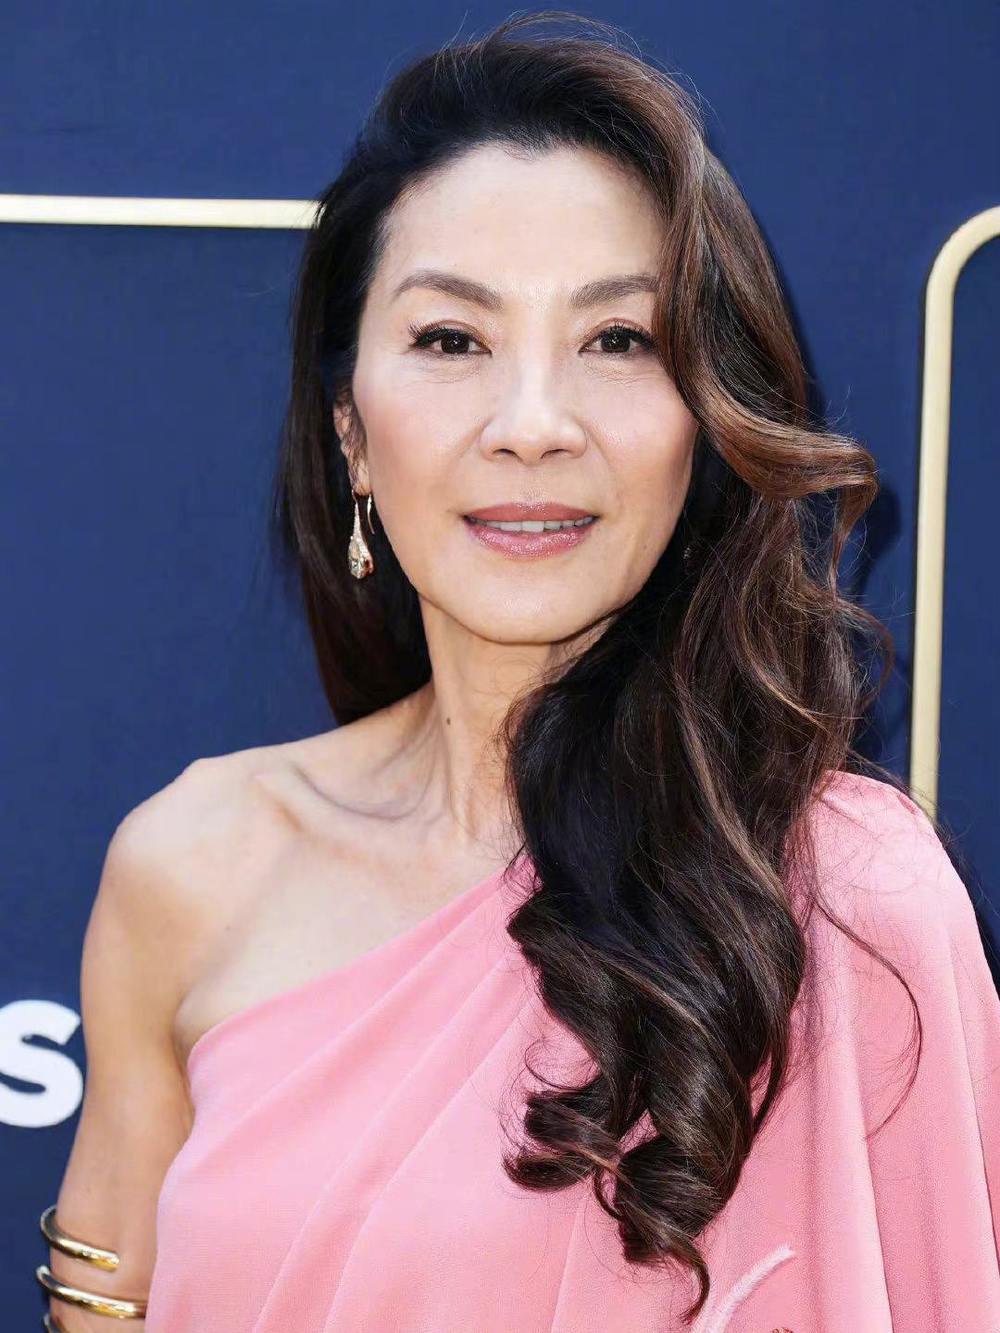 Mỹ nhân Dương Tử Quỳnh sẽ có thể là người châu Á đầu tiên nhận giải Oscar